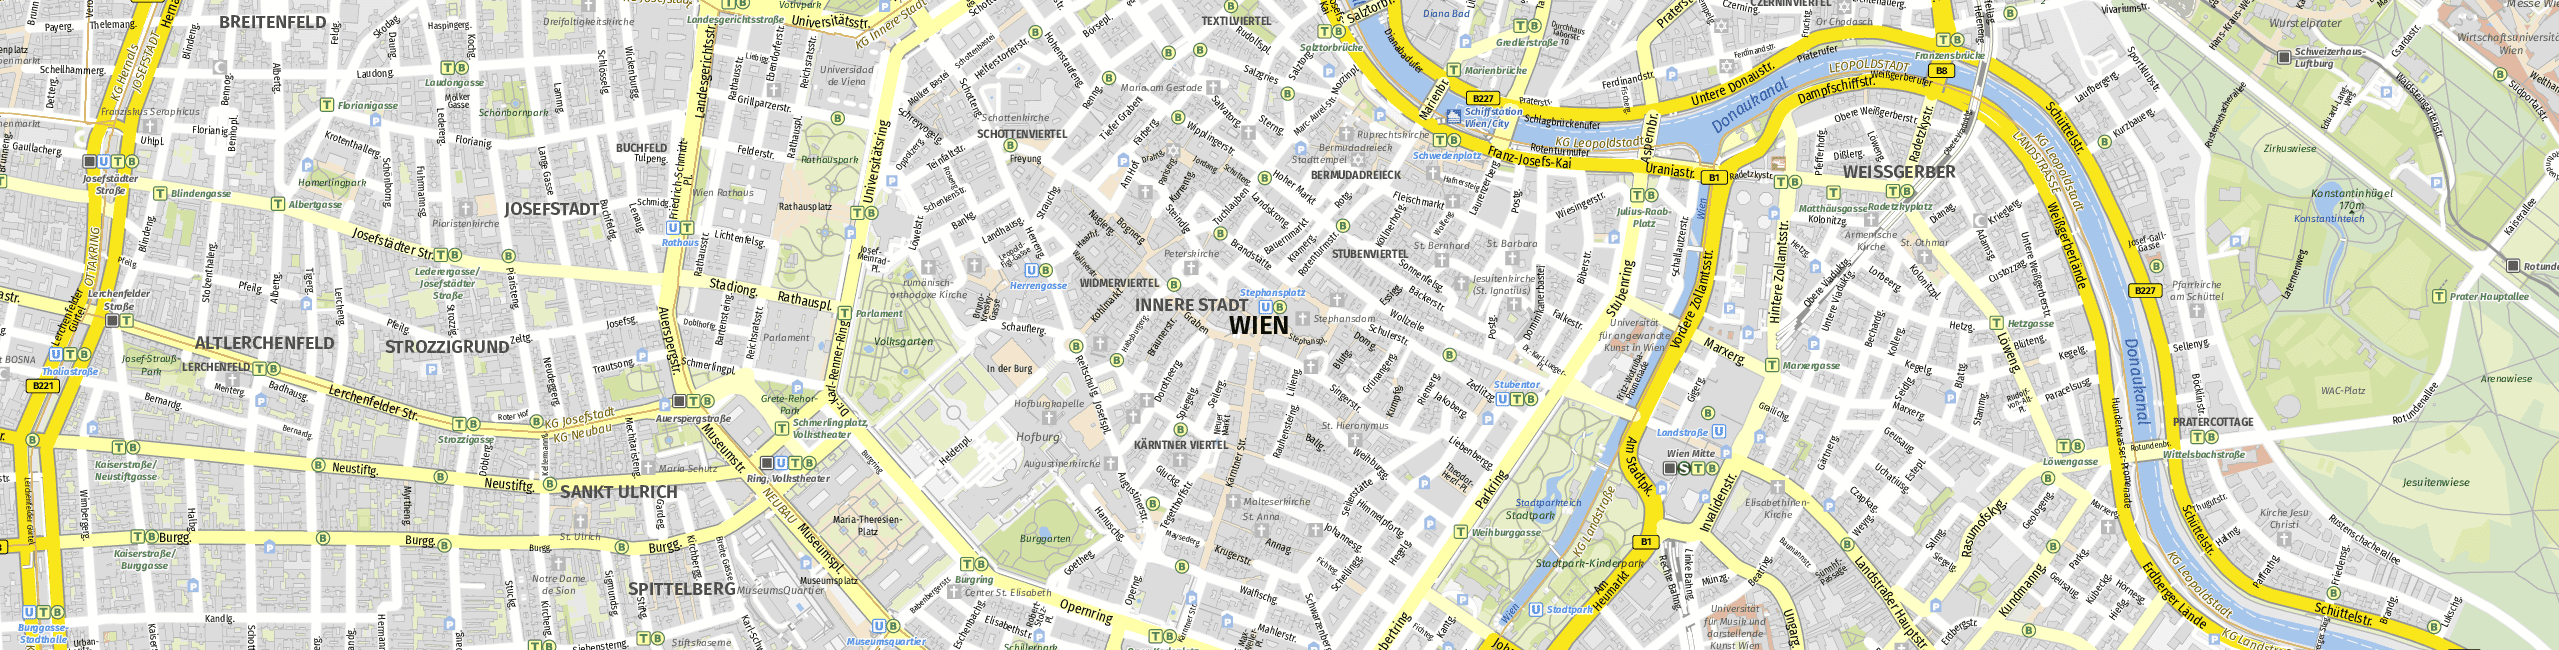 Stadtplan Wien zum Downloaden.